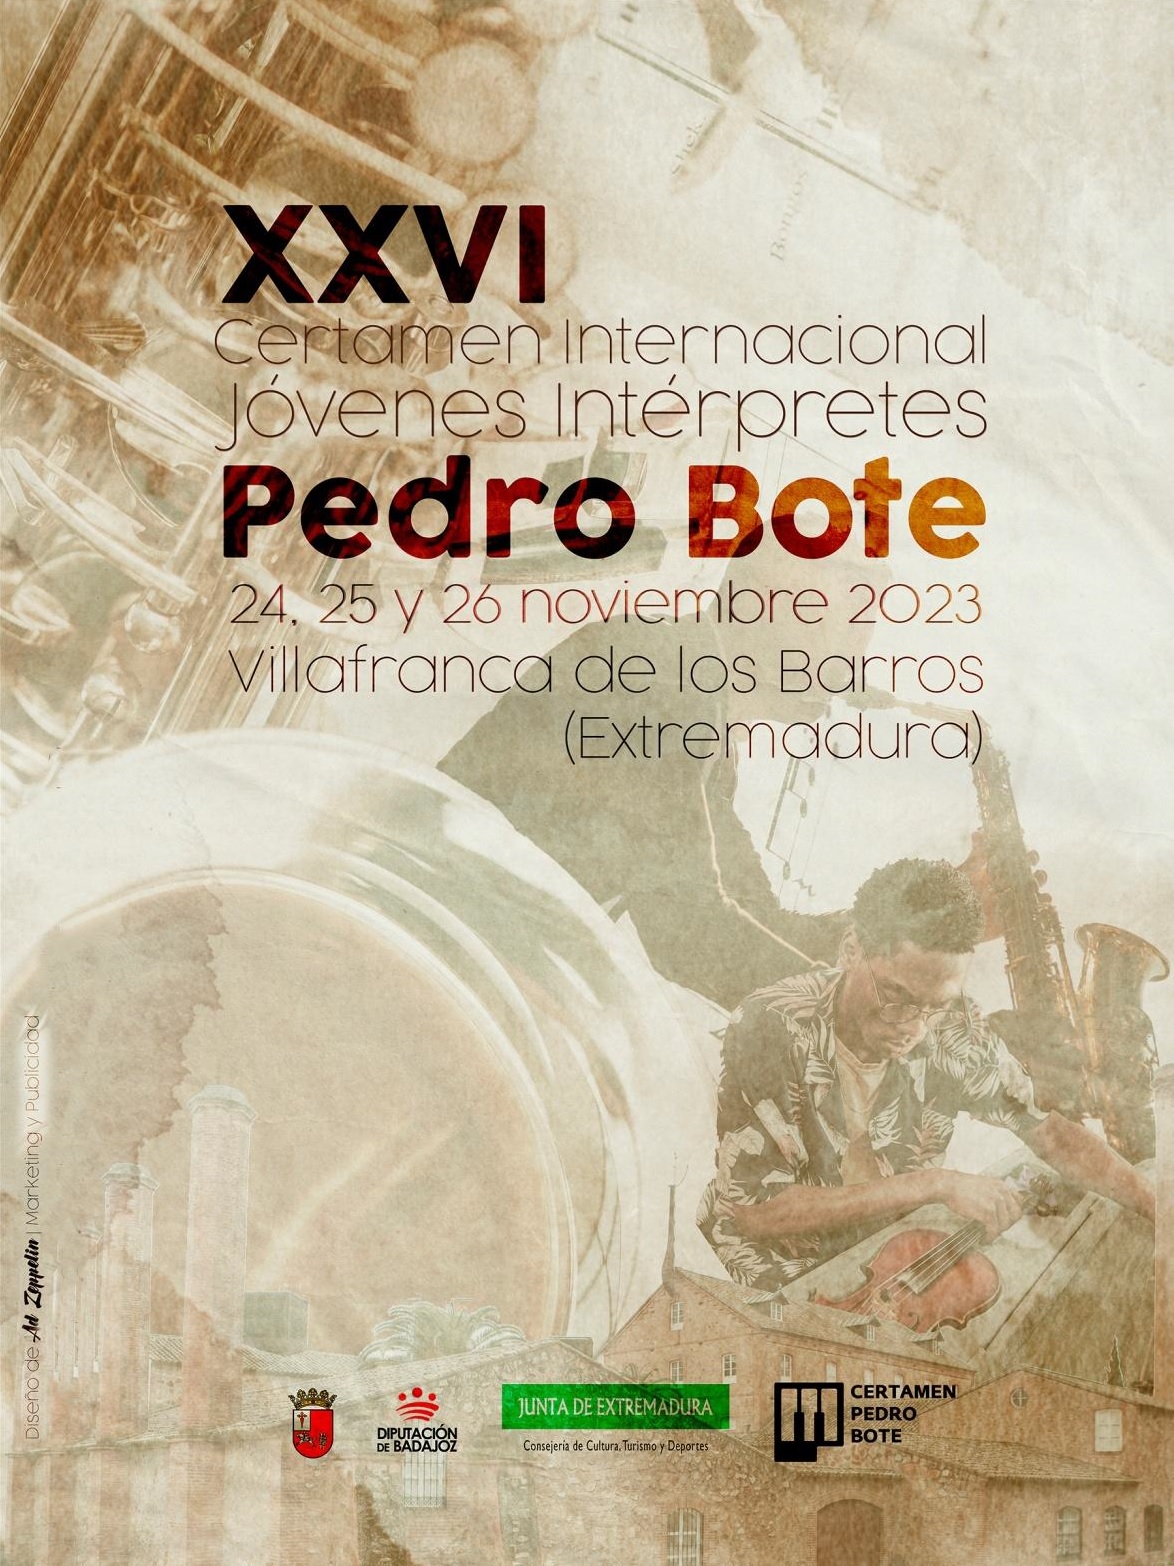 Image 6 of article El Certamen Internacional de Jóvenes Intérpretes 'Pedro Bote' celebra su 26ª edición en Villafranca de los Barros